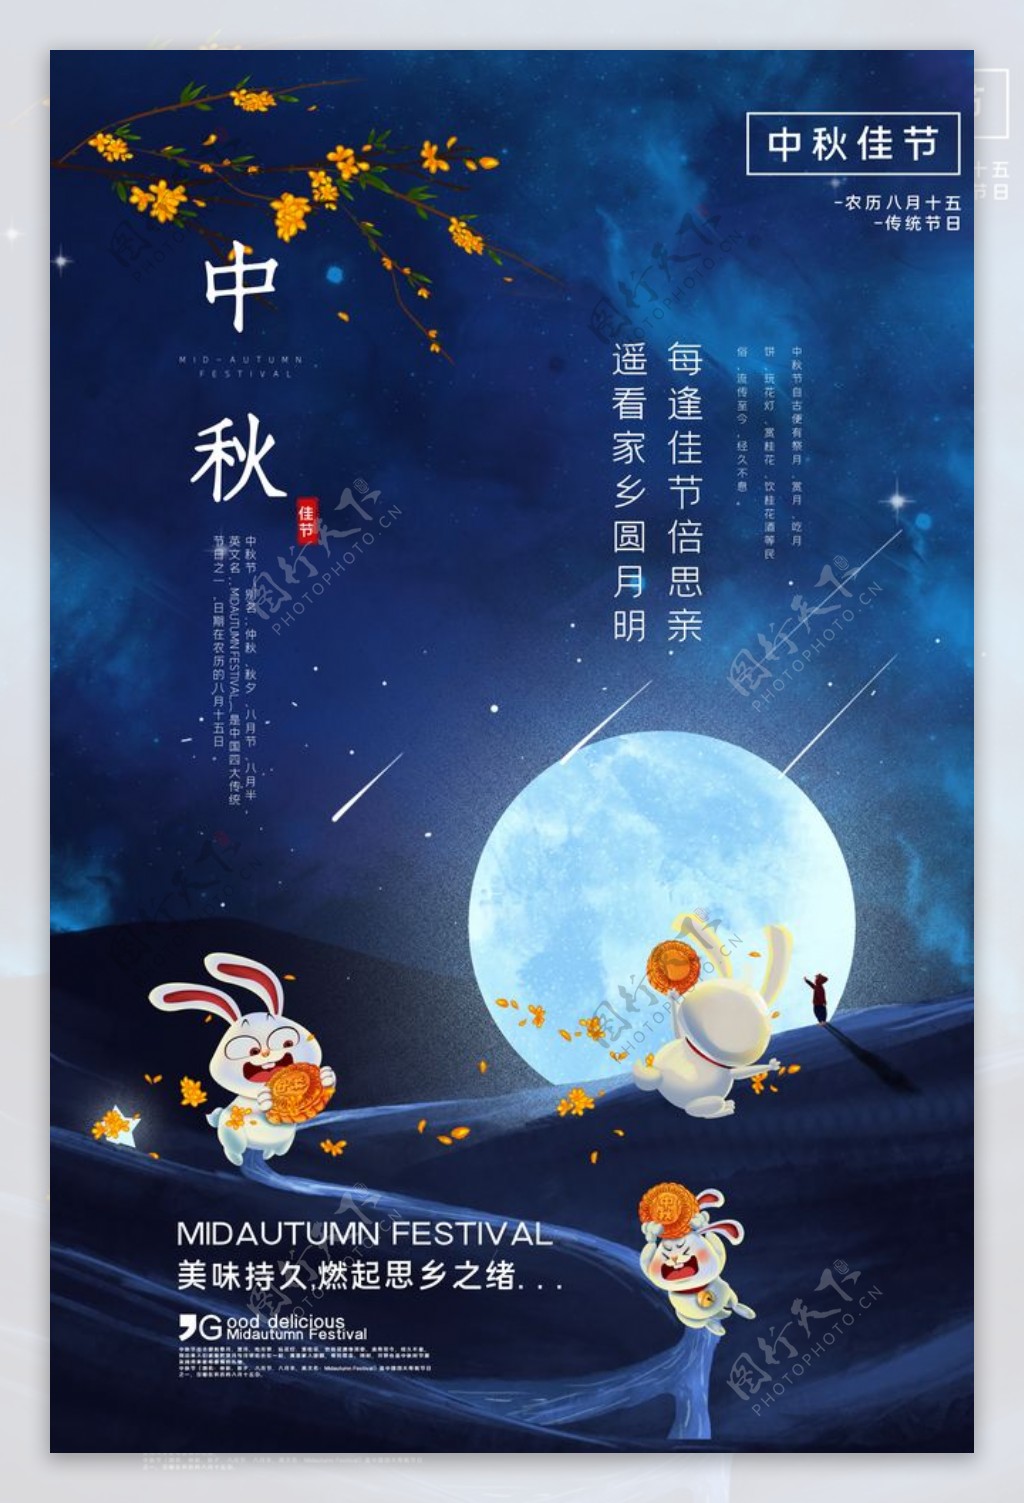 中秋传统节日活动促销海报素材